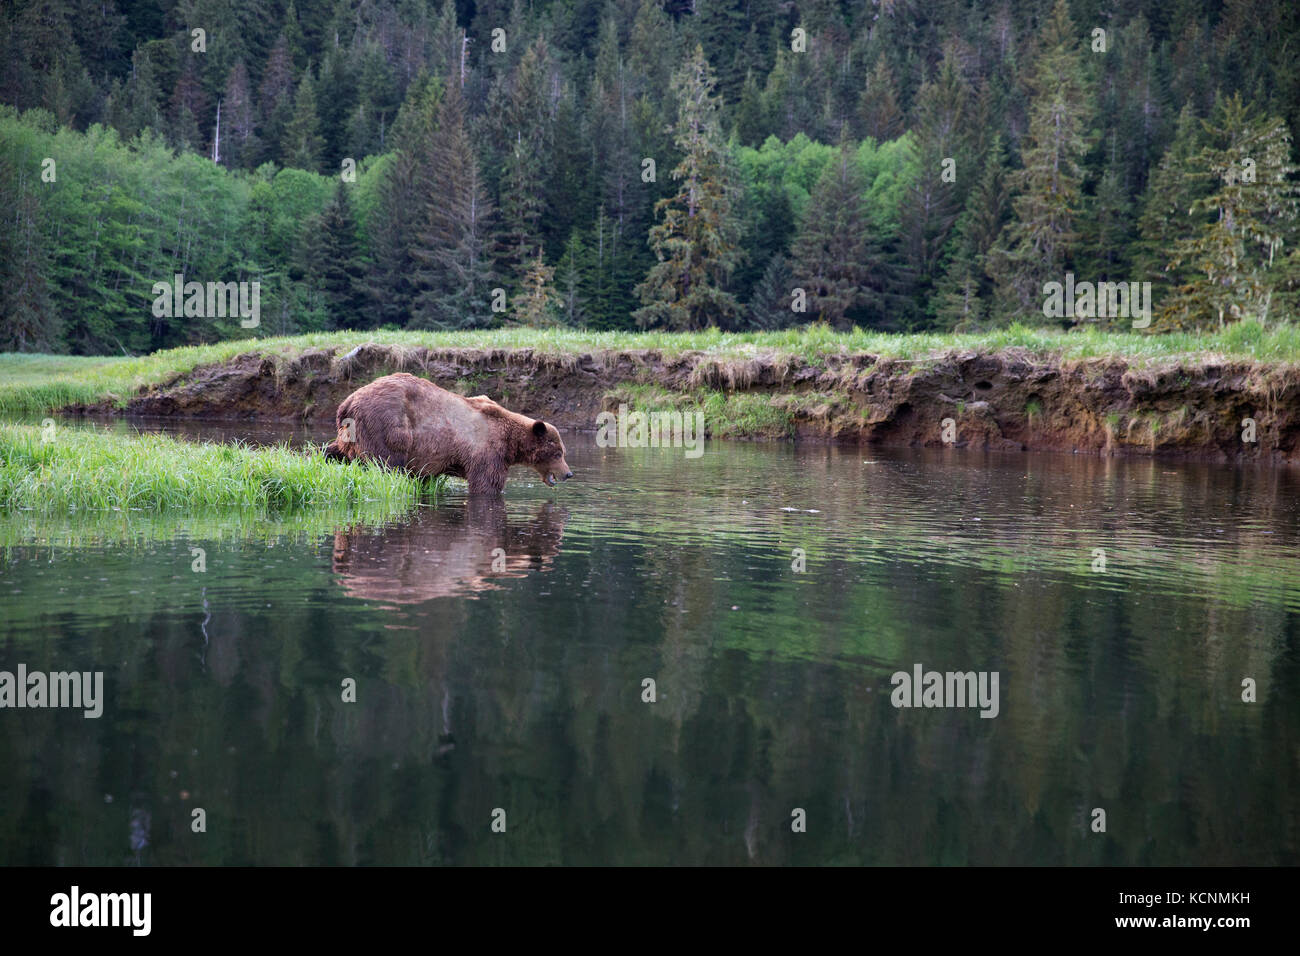 Grizzly Bear (Ursus arctos), große horriblis geschrammt männlich, Wasser, enterring kwinimass Estuary, British Columbia, Kanada. Stockfoto